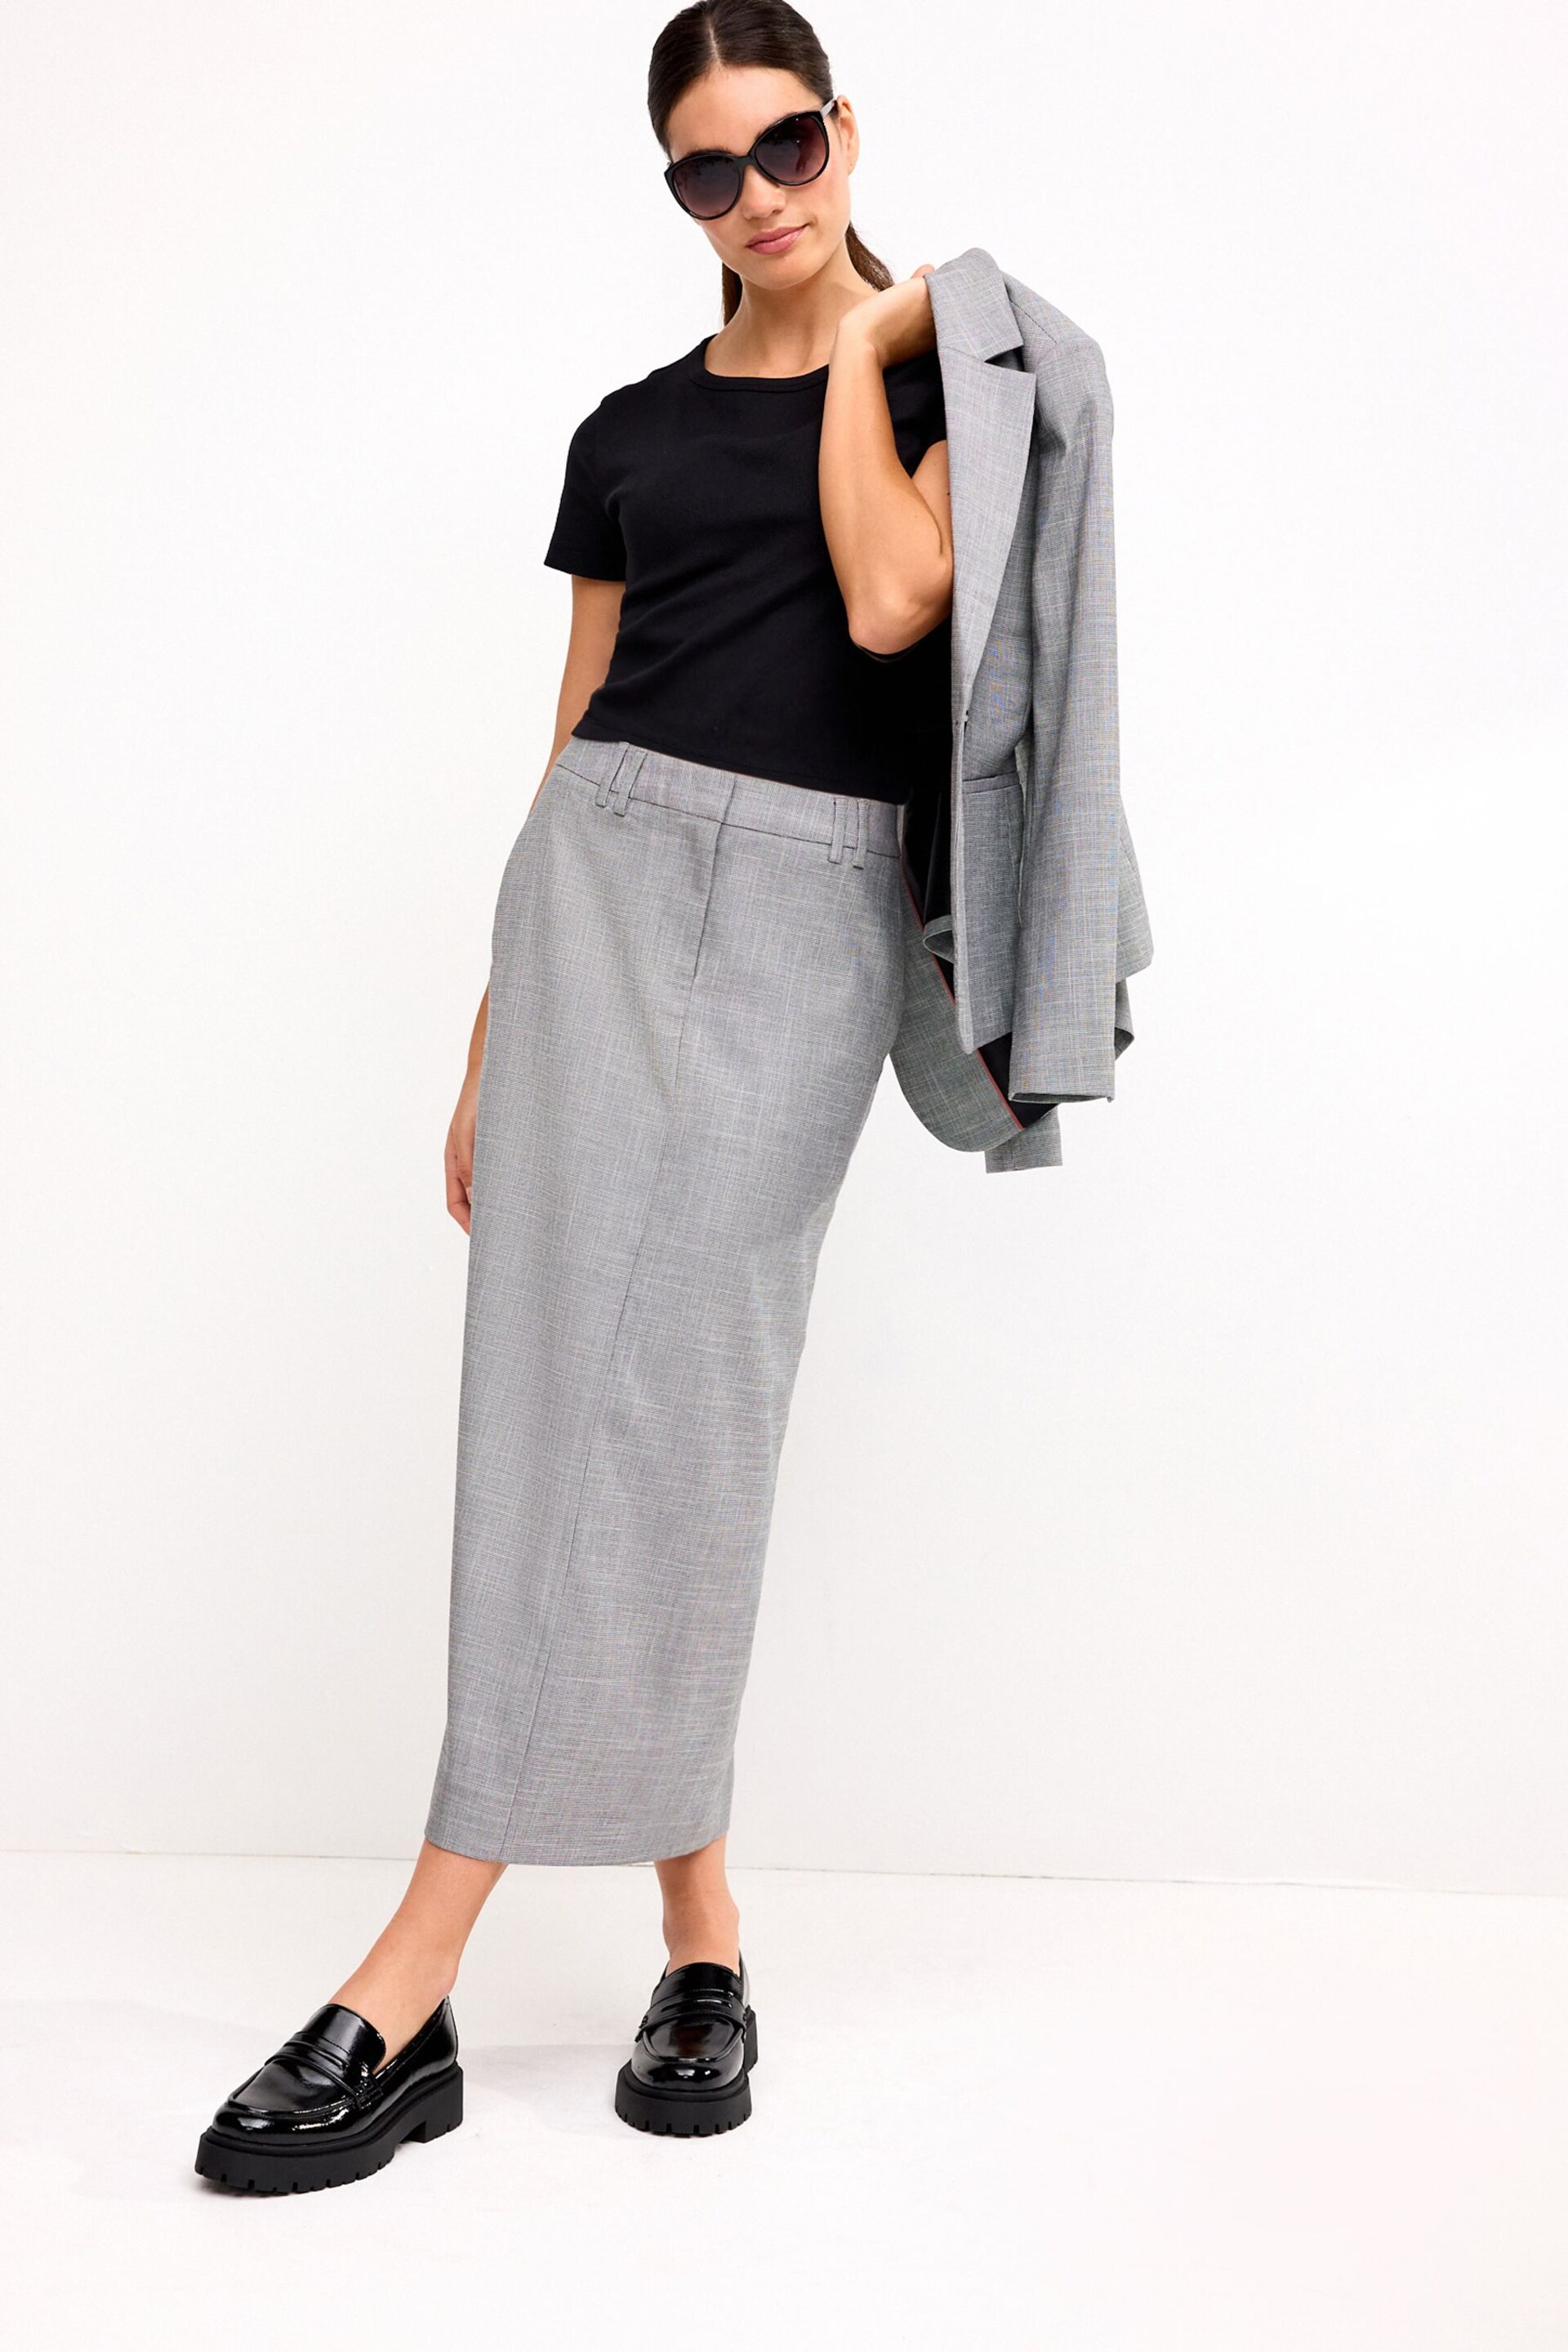 Black/White Tailored Check Column Skirt - Image 1 of 7